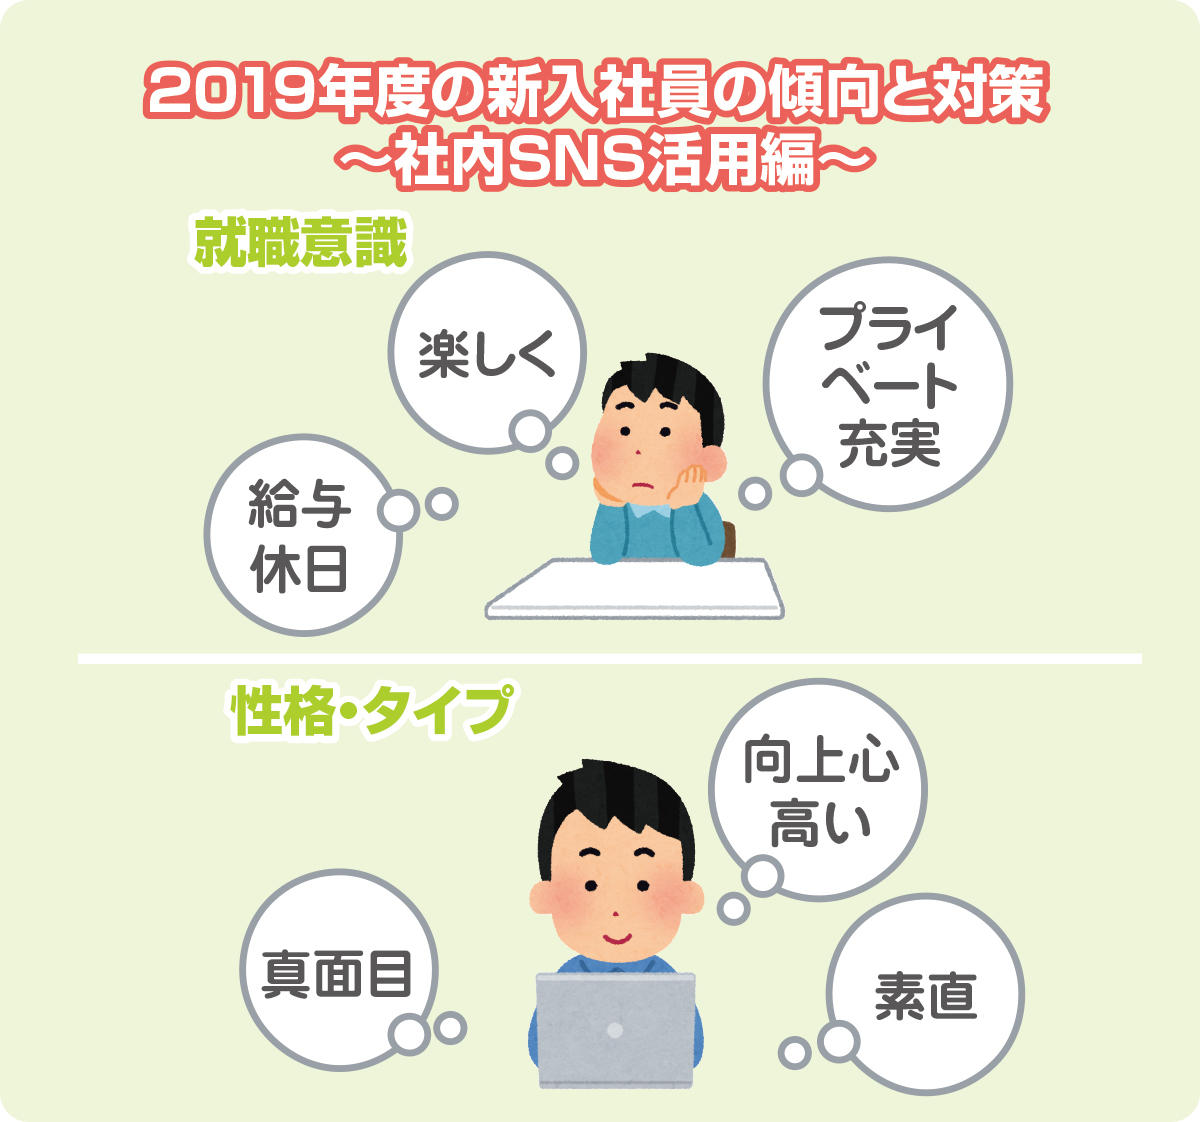 2019年度の新入社員の傾向と対策 ～社内SNS活用編～